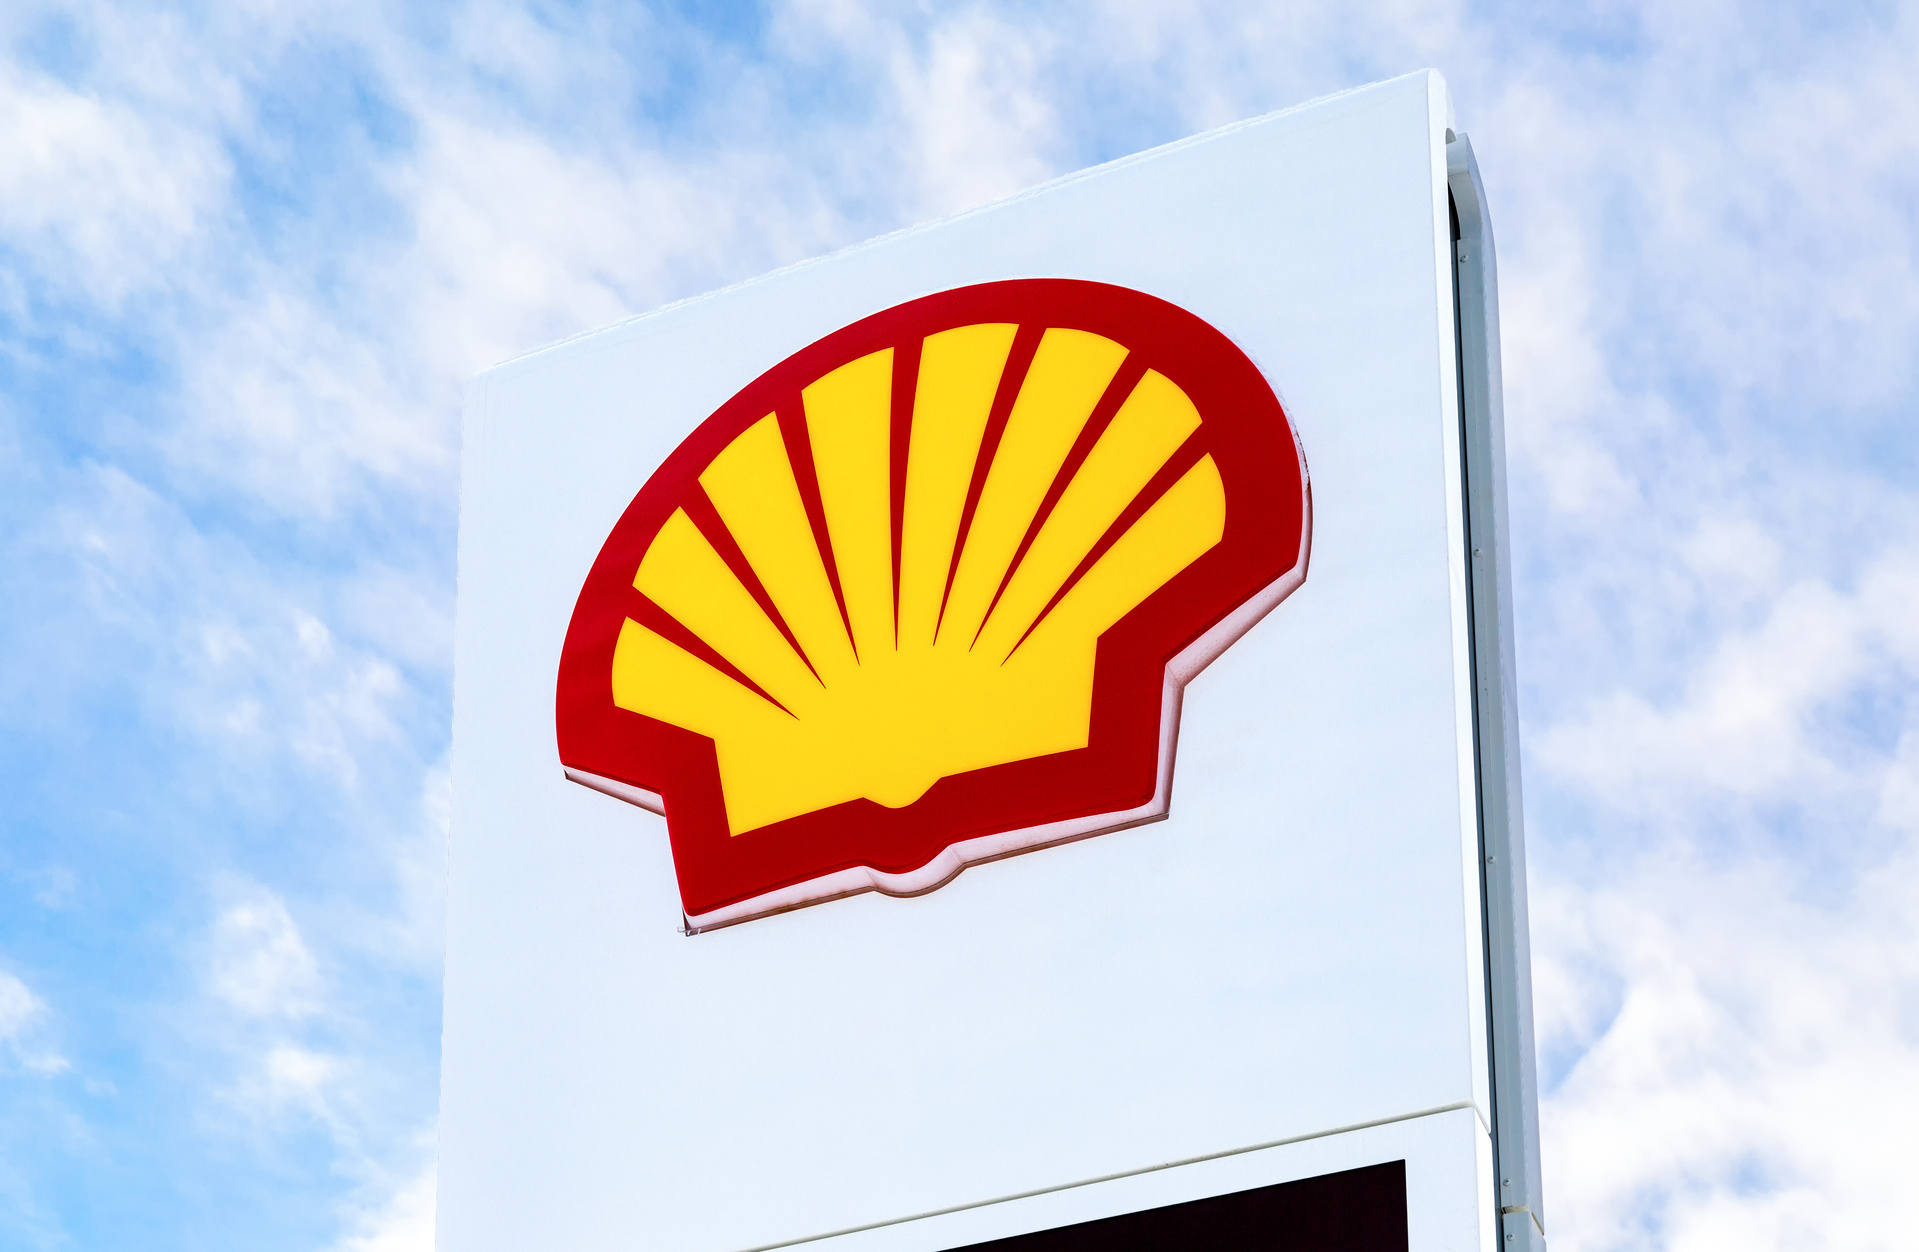 Émissions de CO2 : face aux accusations, Shell fait appel